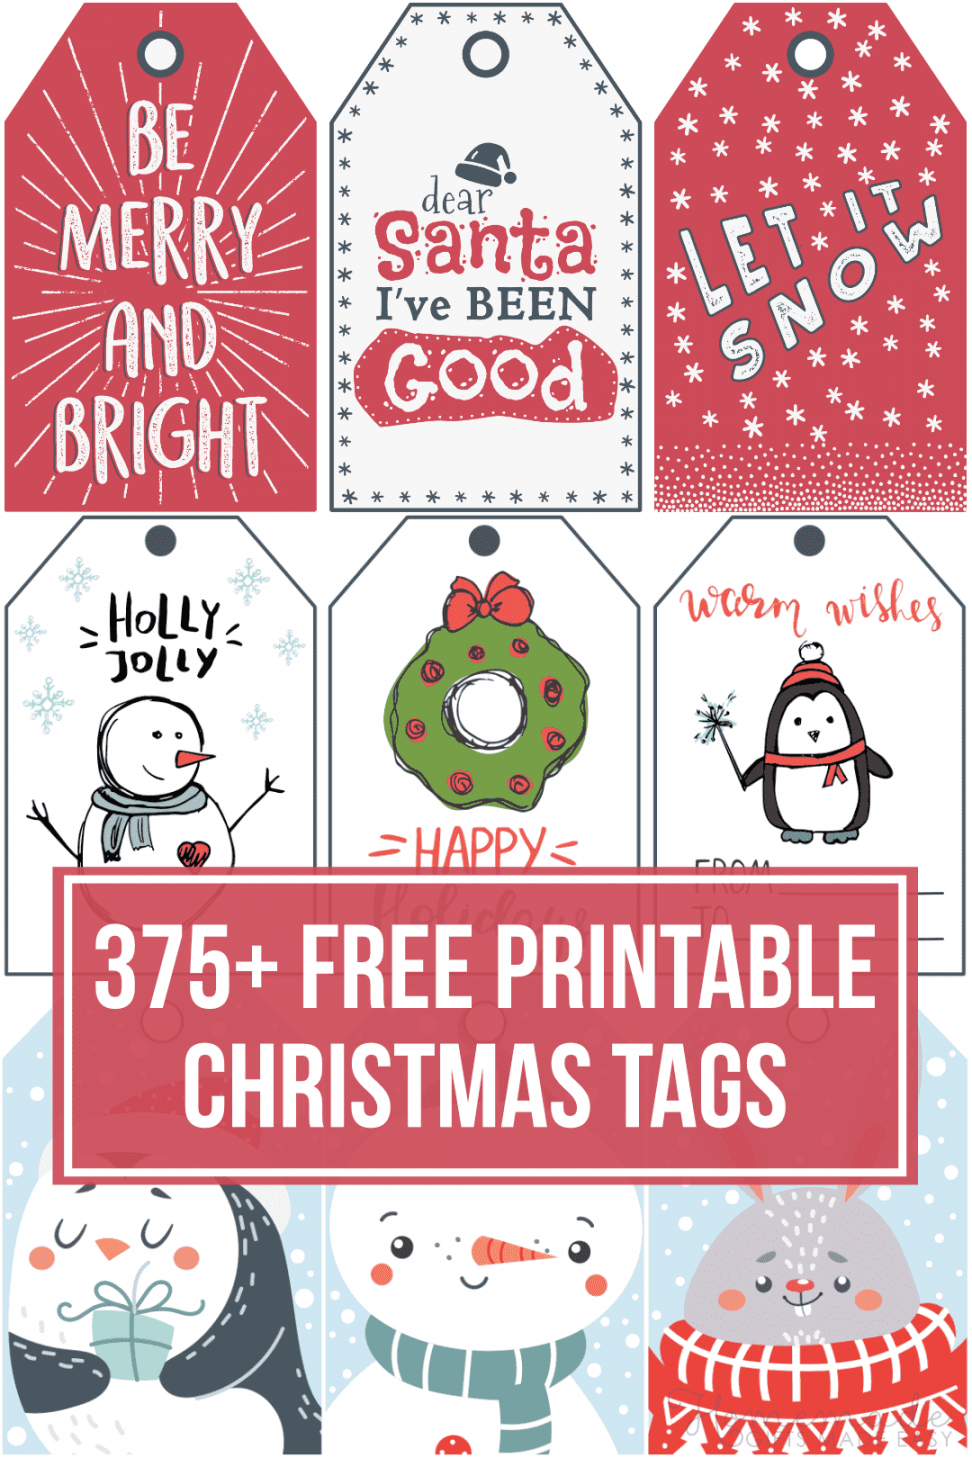 Free Christmas Tag Printables - Printable - + Free Printable Christmas Tags for your Holiday Gifts